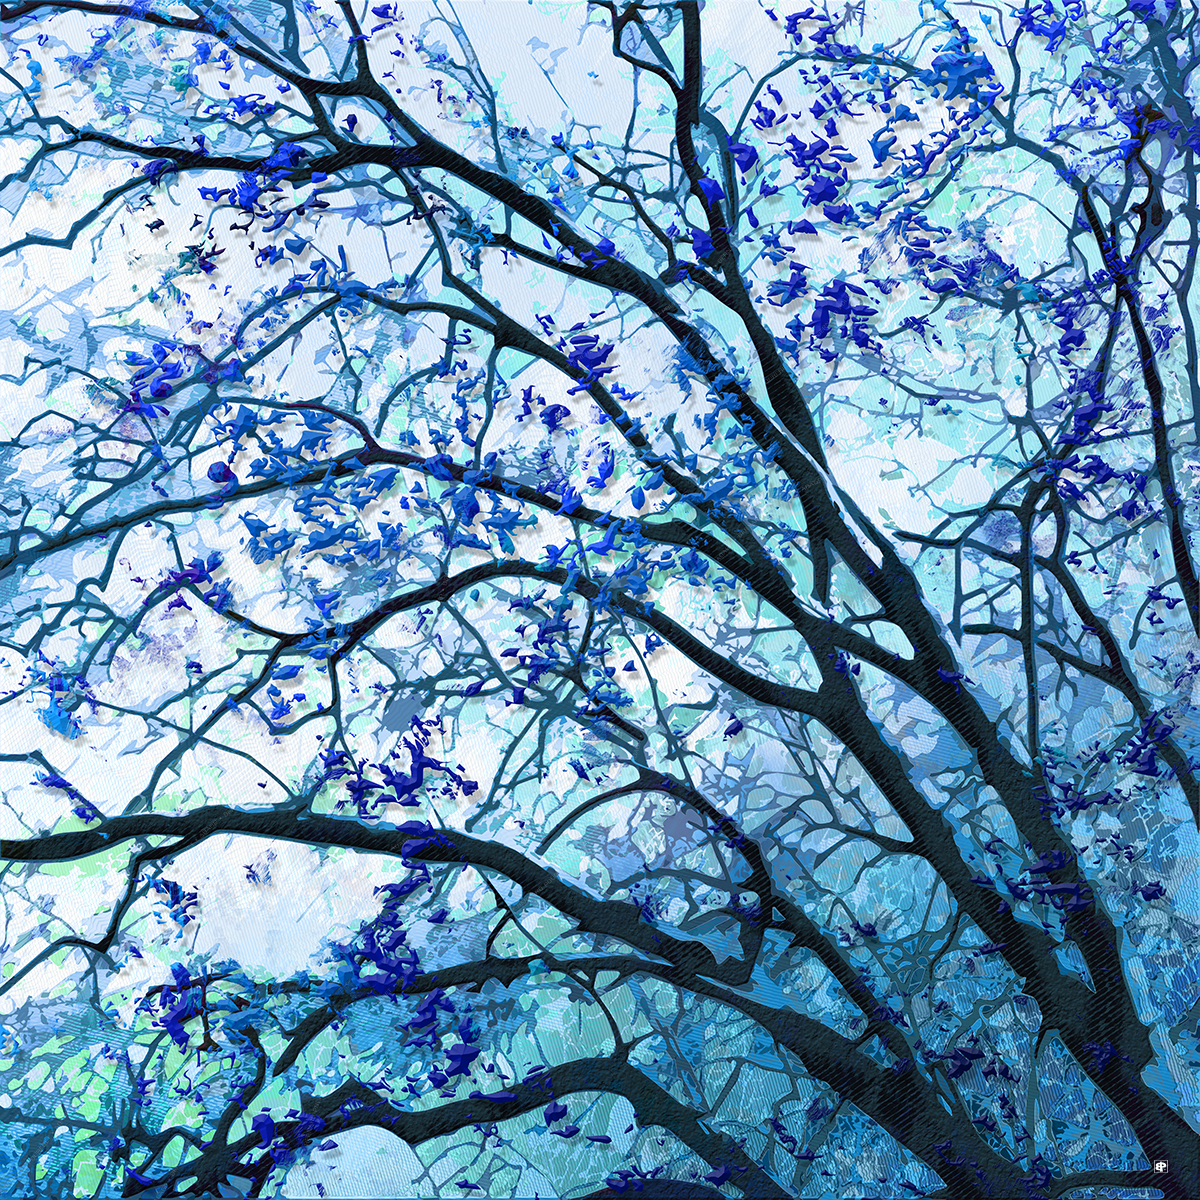 Le platane aux reflets bleus. œuvre réalisée à la main sur informatique, inspirée d'une photographie d'arbres du parc Micaud